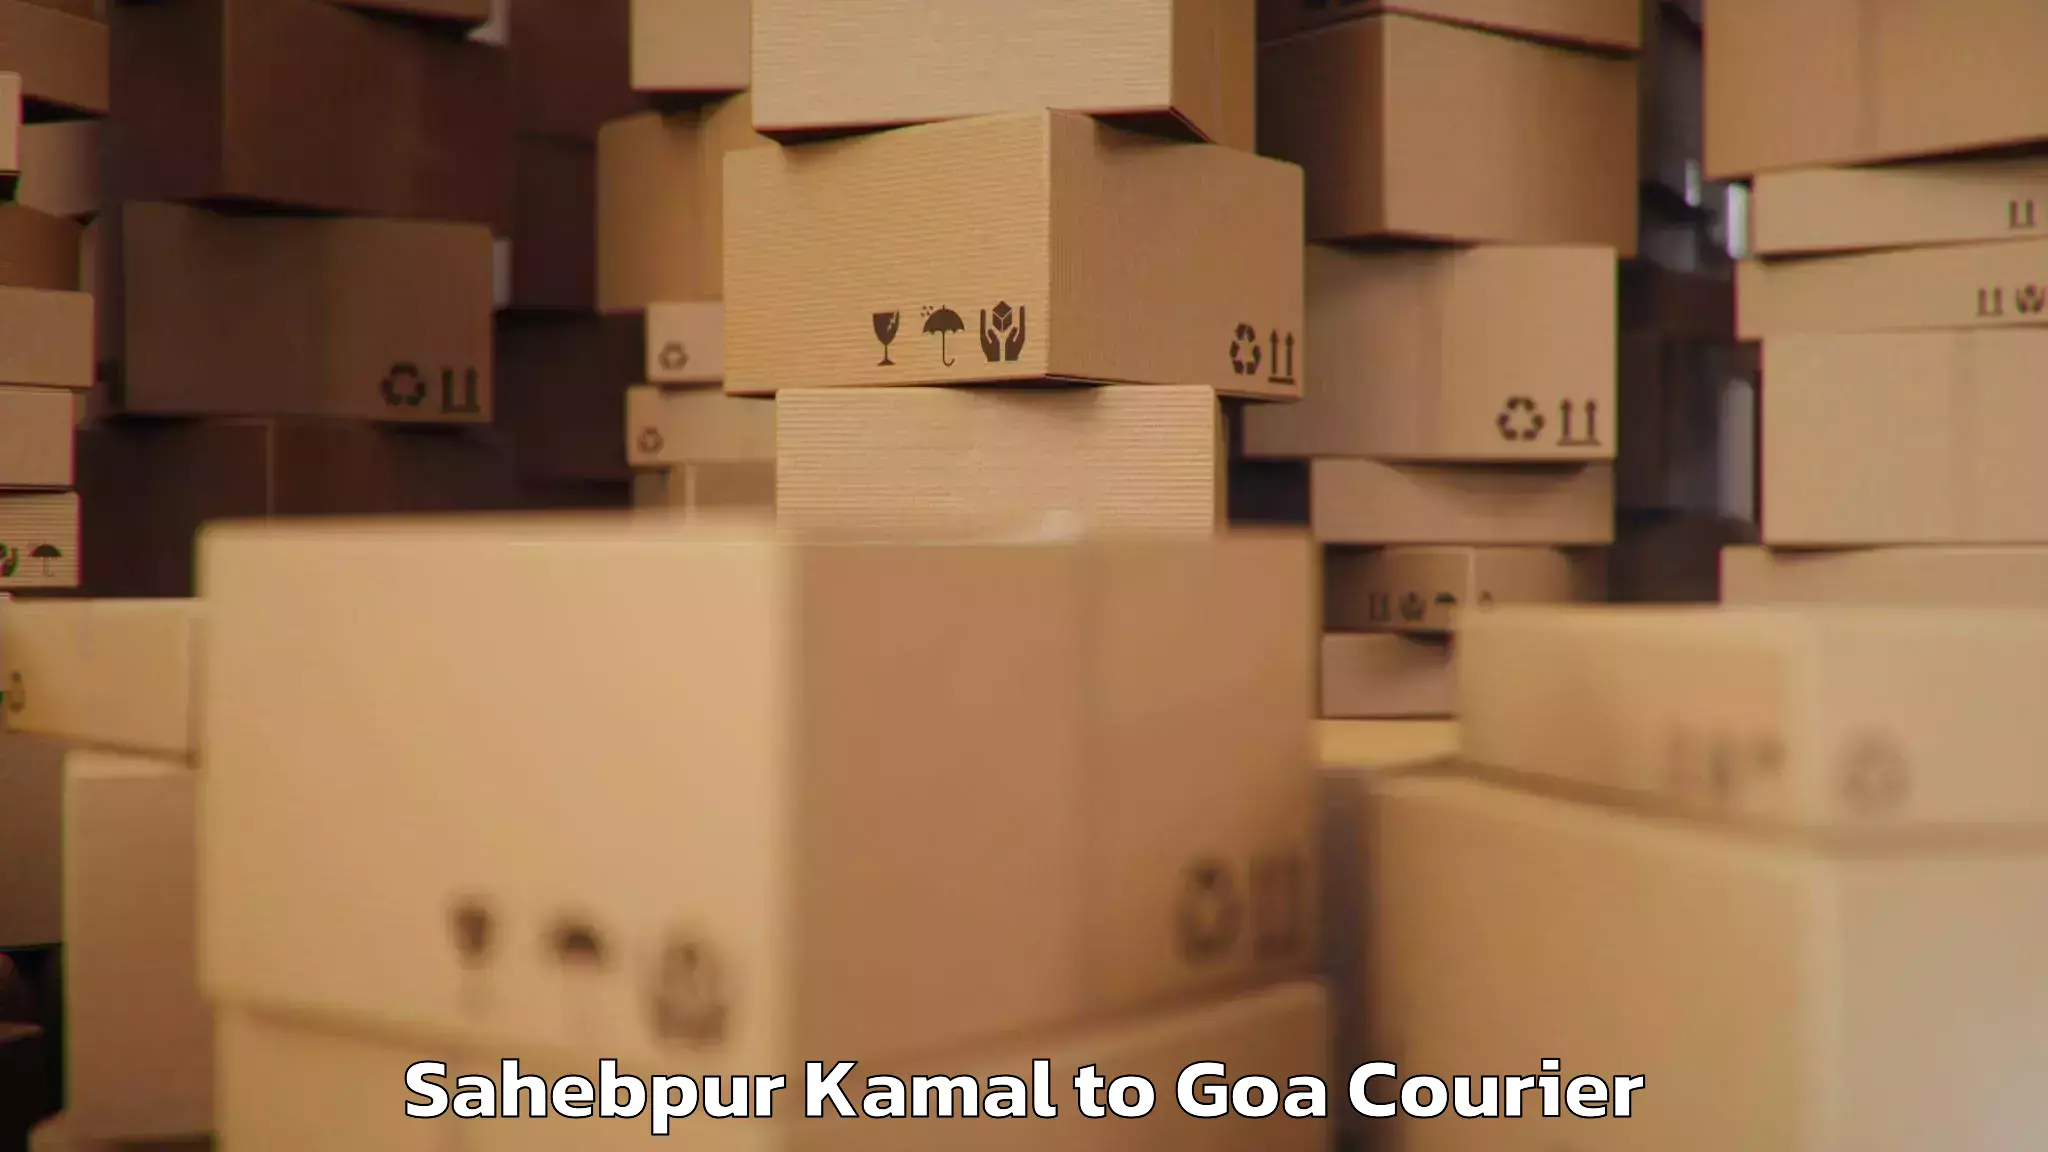 Luggage delivery system Sahebpur Kamal to Goa University